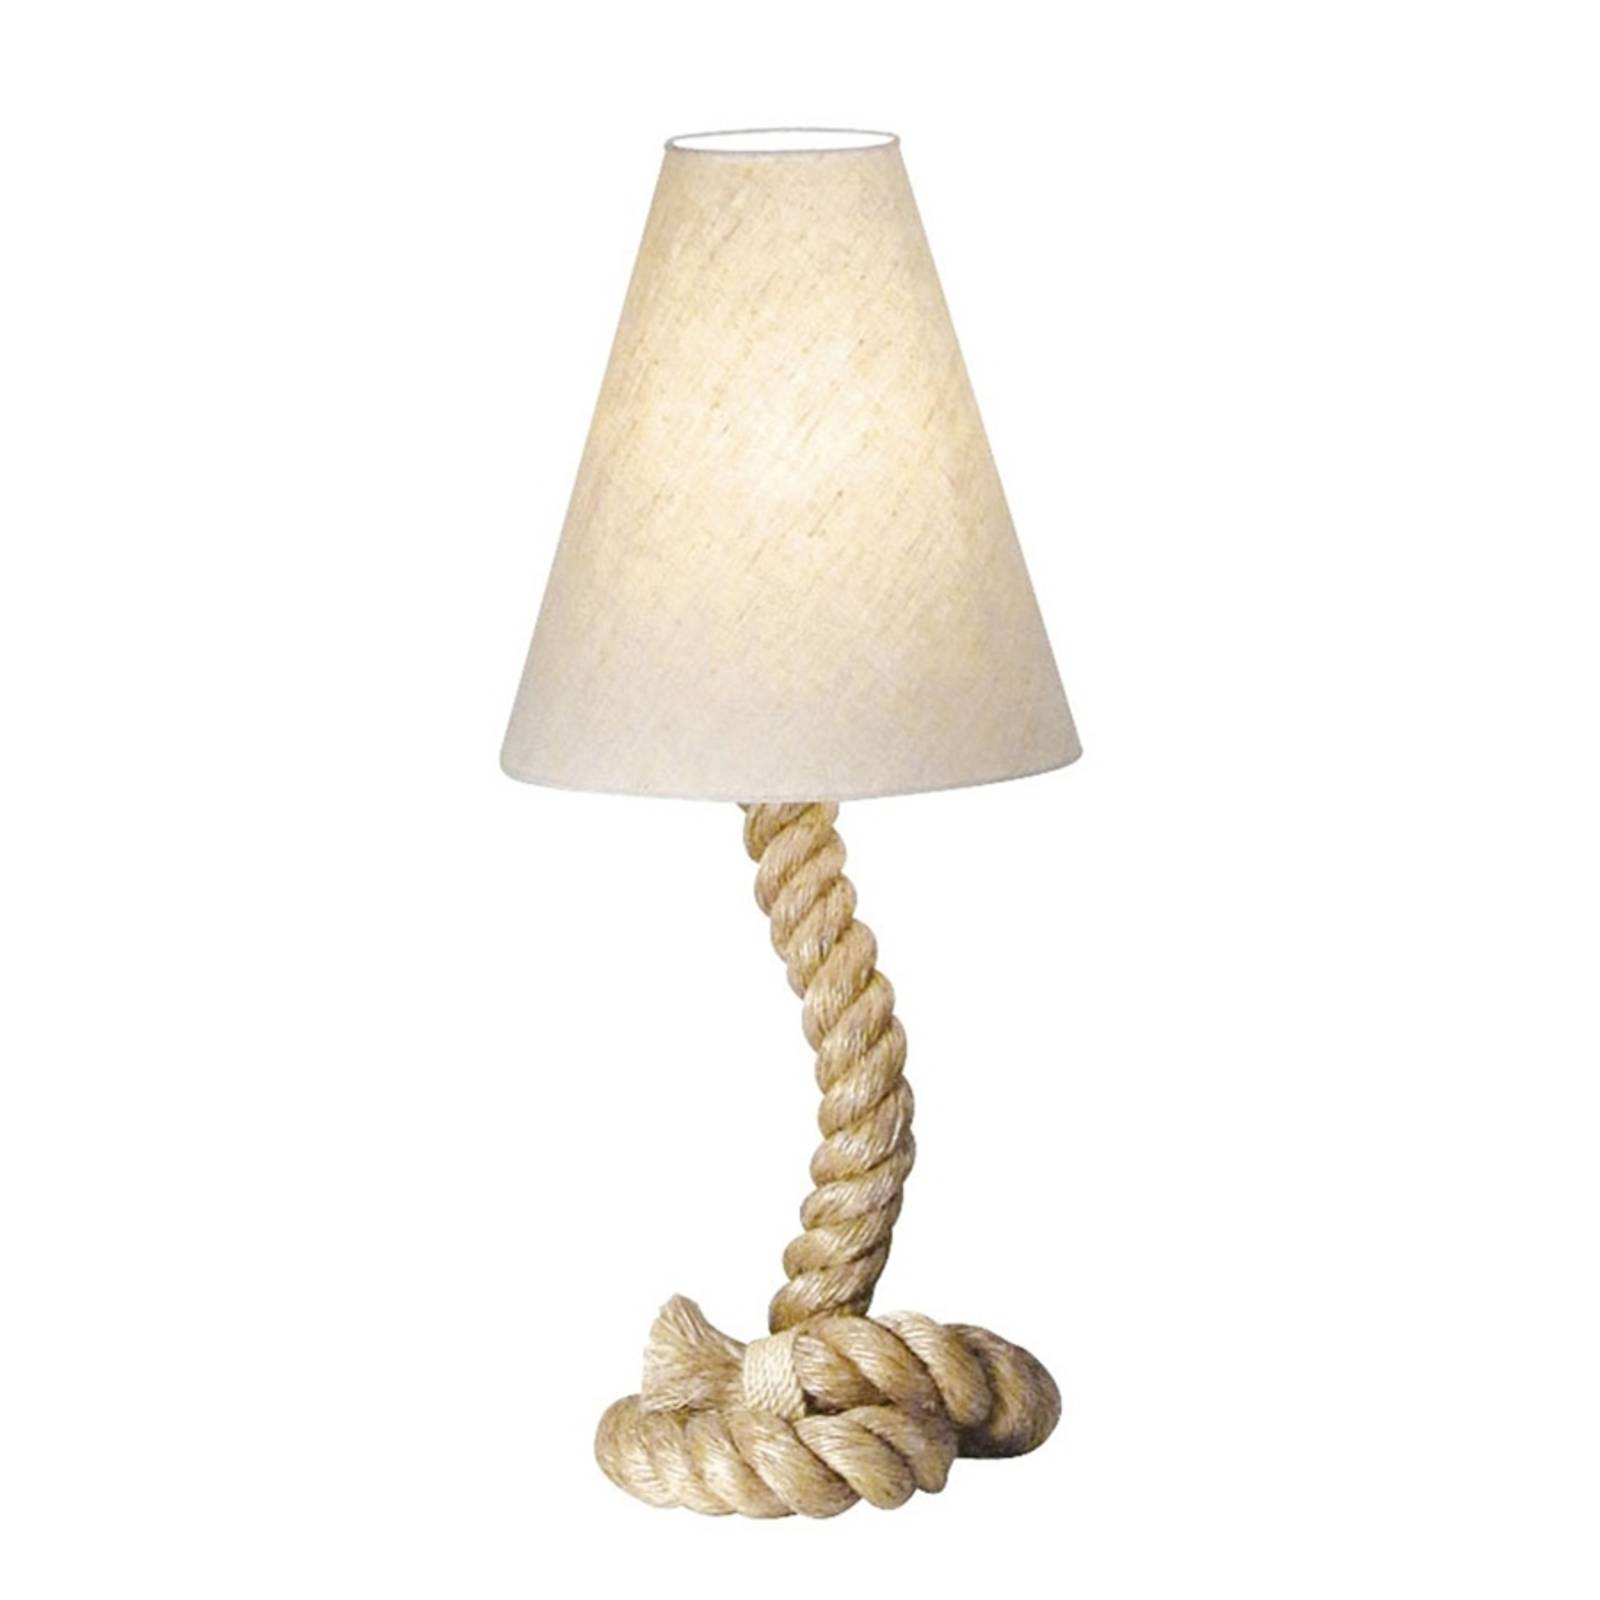 Sea-club asztali lámpa victoria, lámpaernyő kerek 30 cm